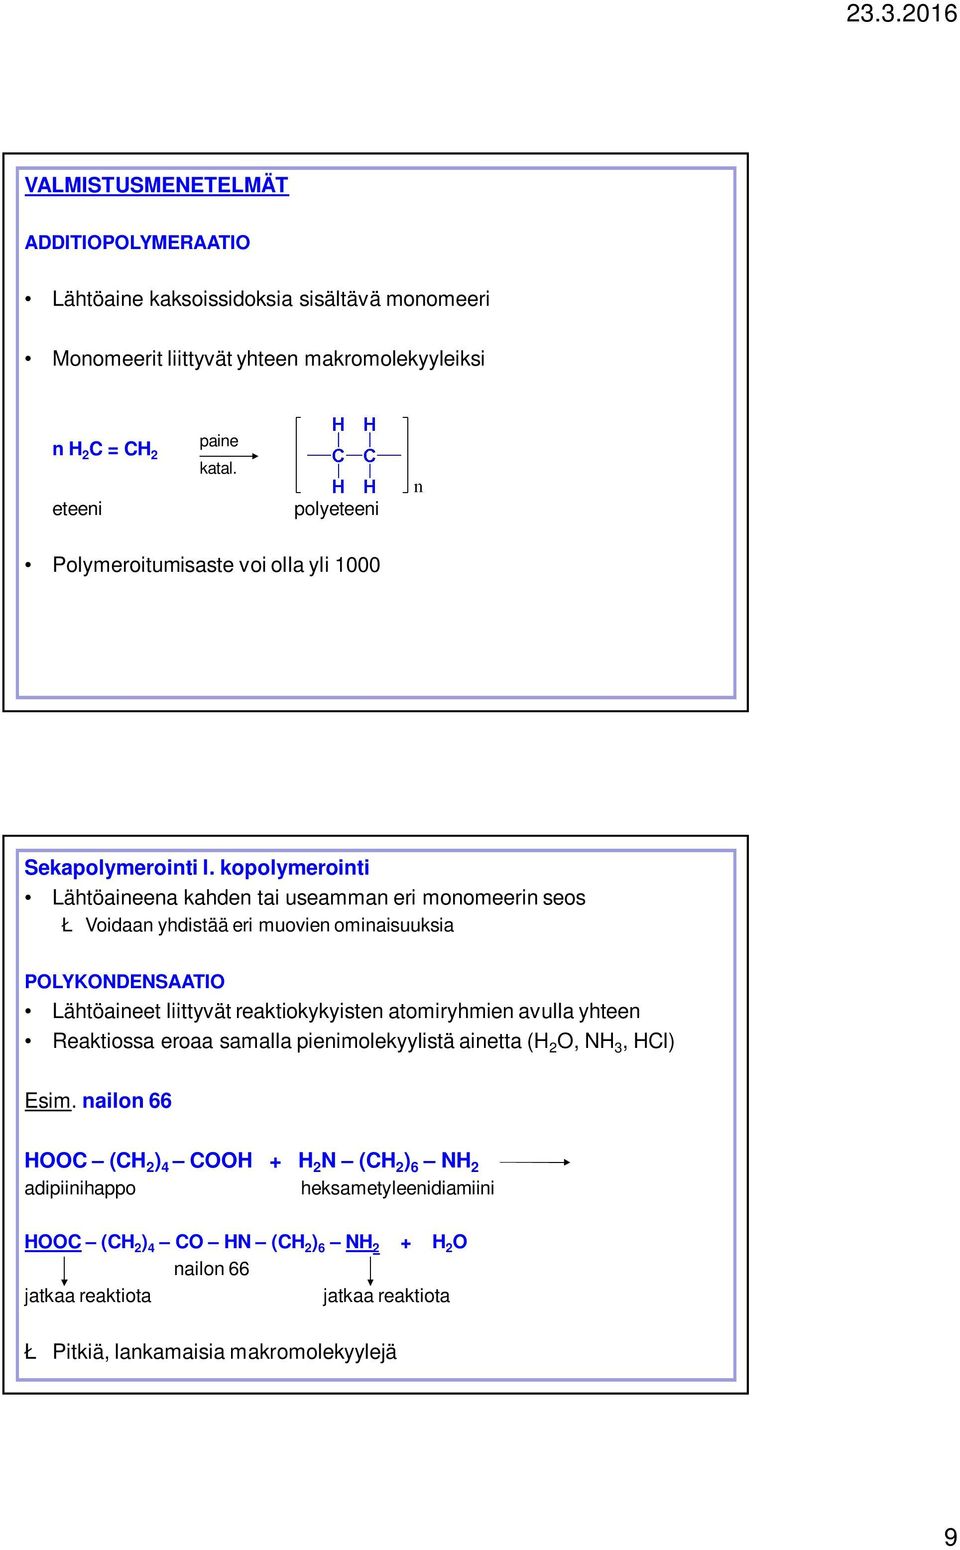 kopolymerointi Lähtöaineena kahden tai useamman eri monomeerin seos Ł Voidaan yhdistää eri muovien ominaisuuksia POLYKONDENSAATIO Lähtöaineet liittyvät reaktiokykyisten atomiryhmien